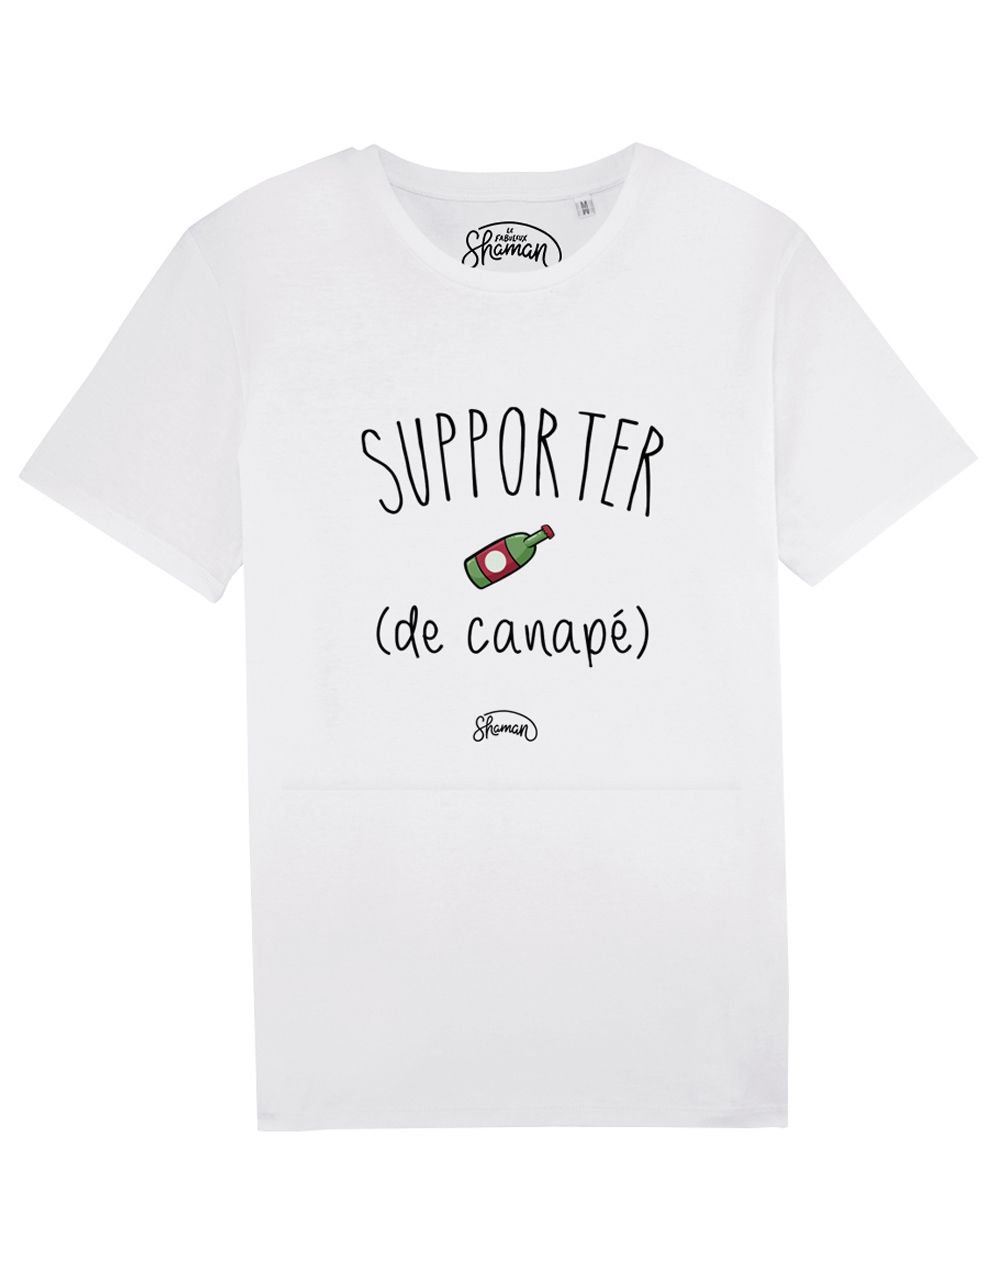 Tee-shirt "Supporter de canapé"